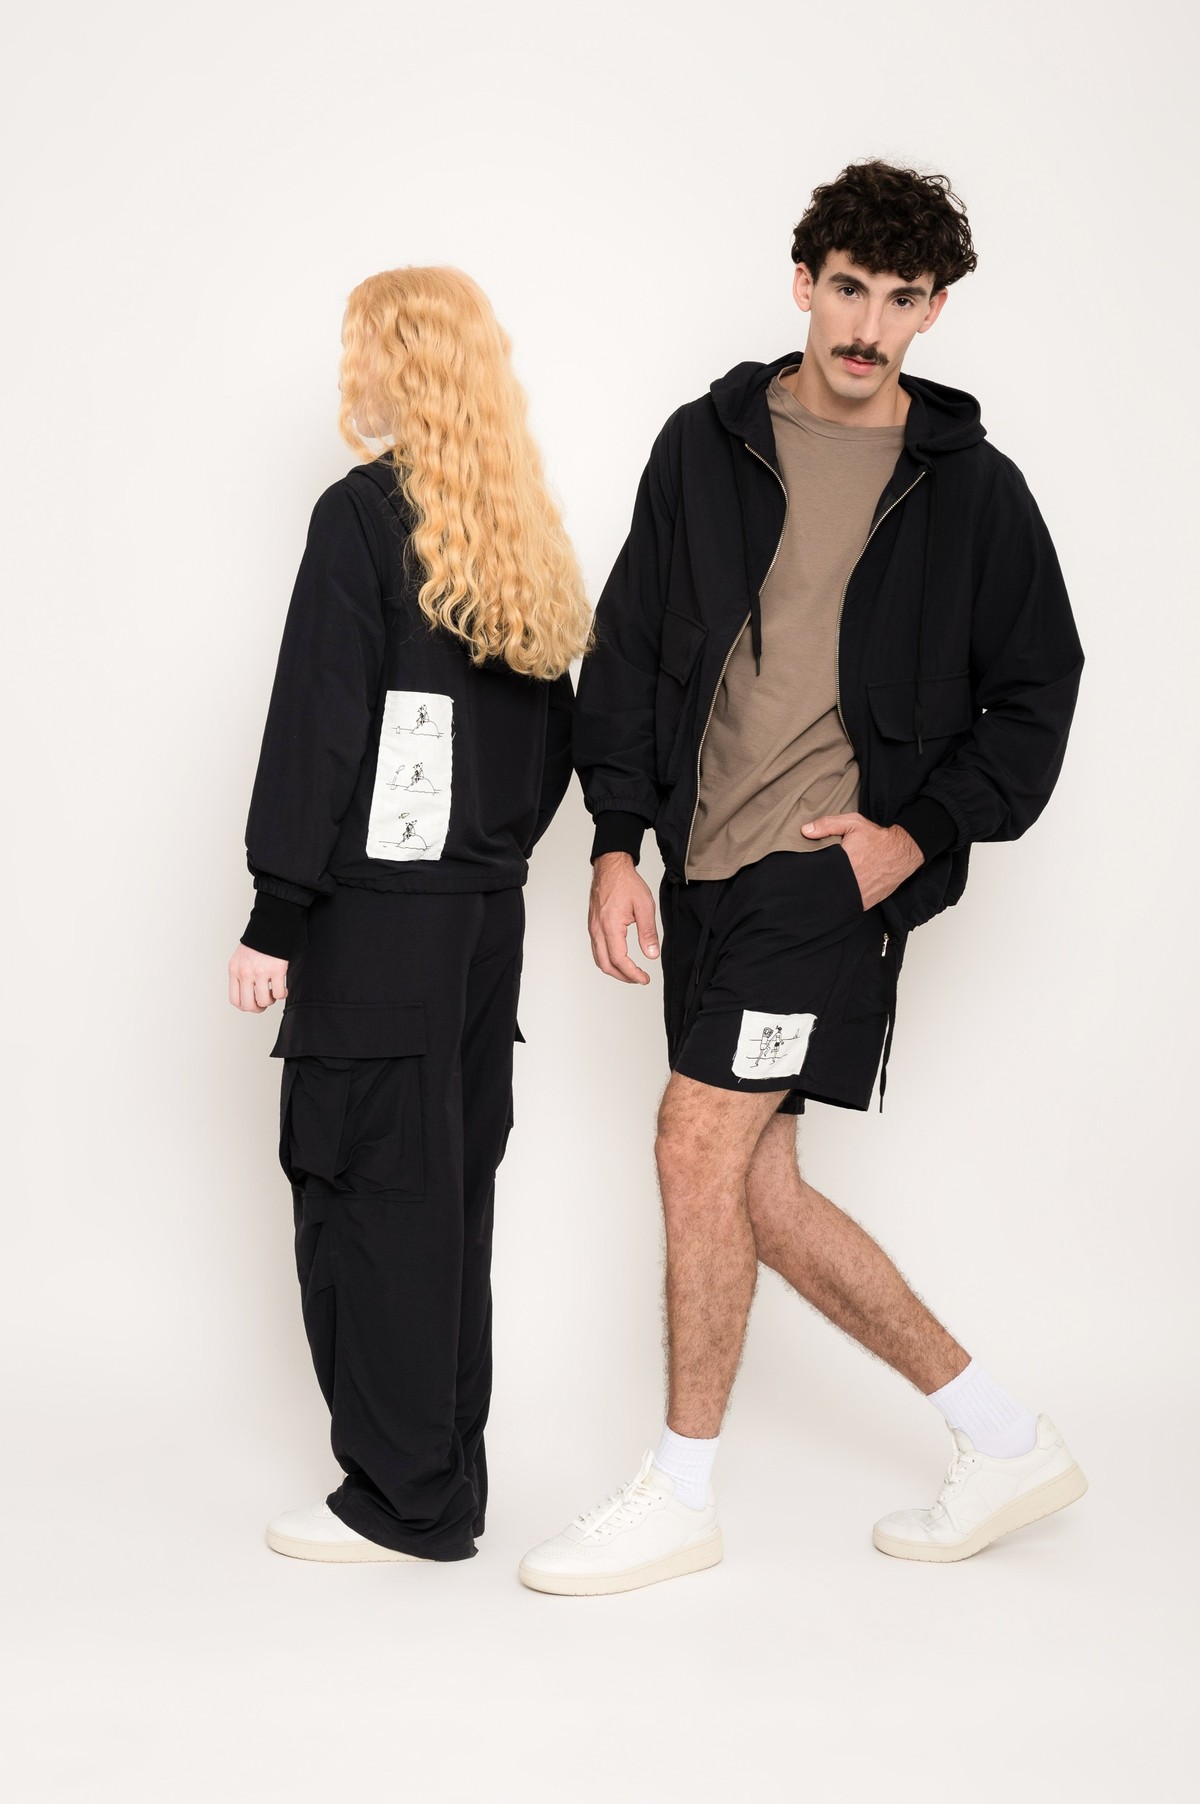 jaqueta de nylon biodegradável com patchwork Yuval Robichek 